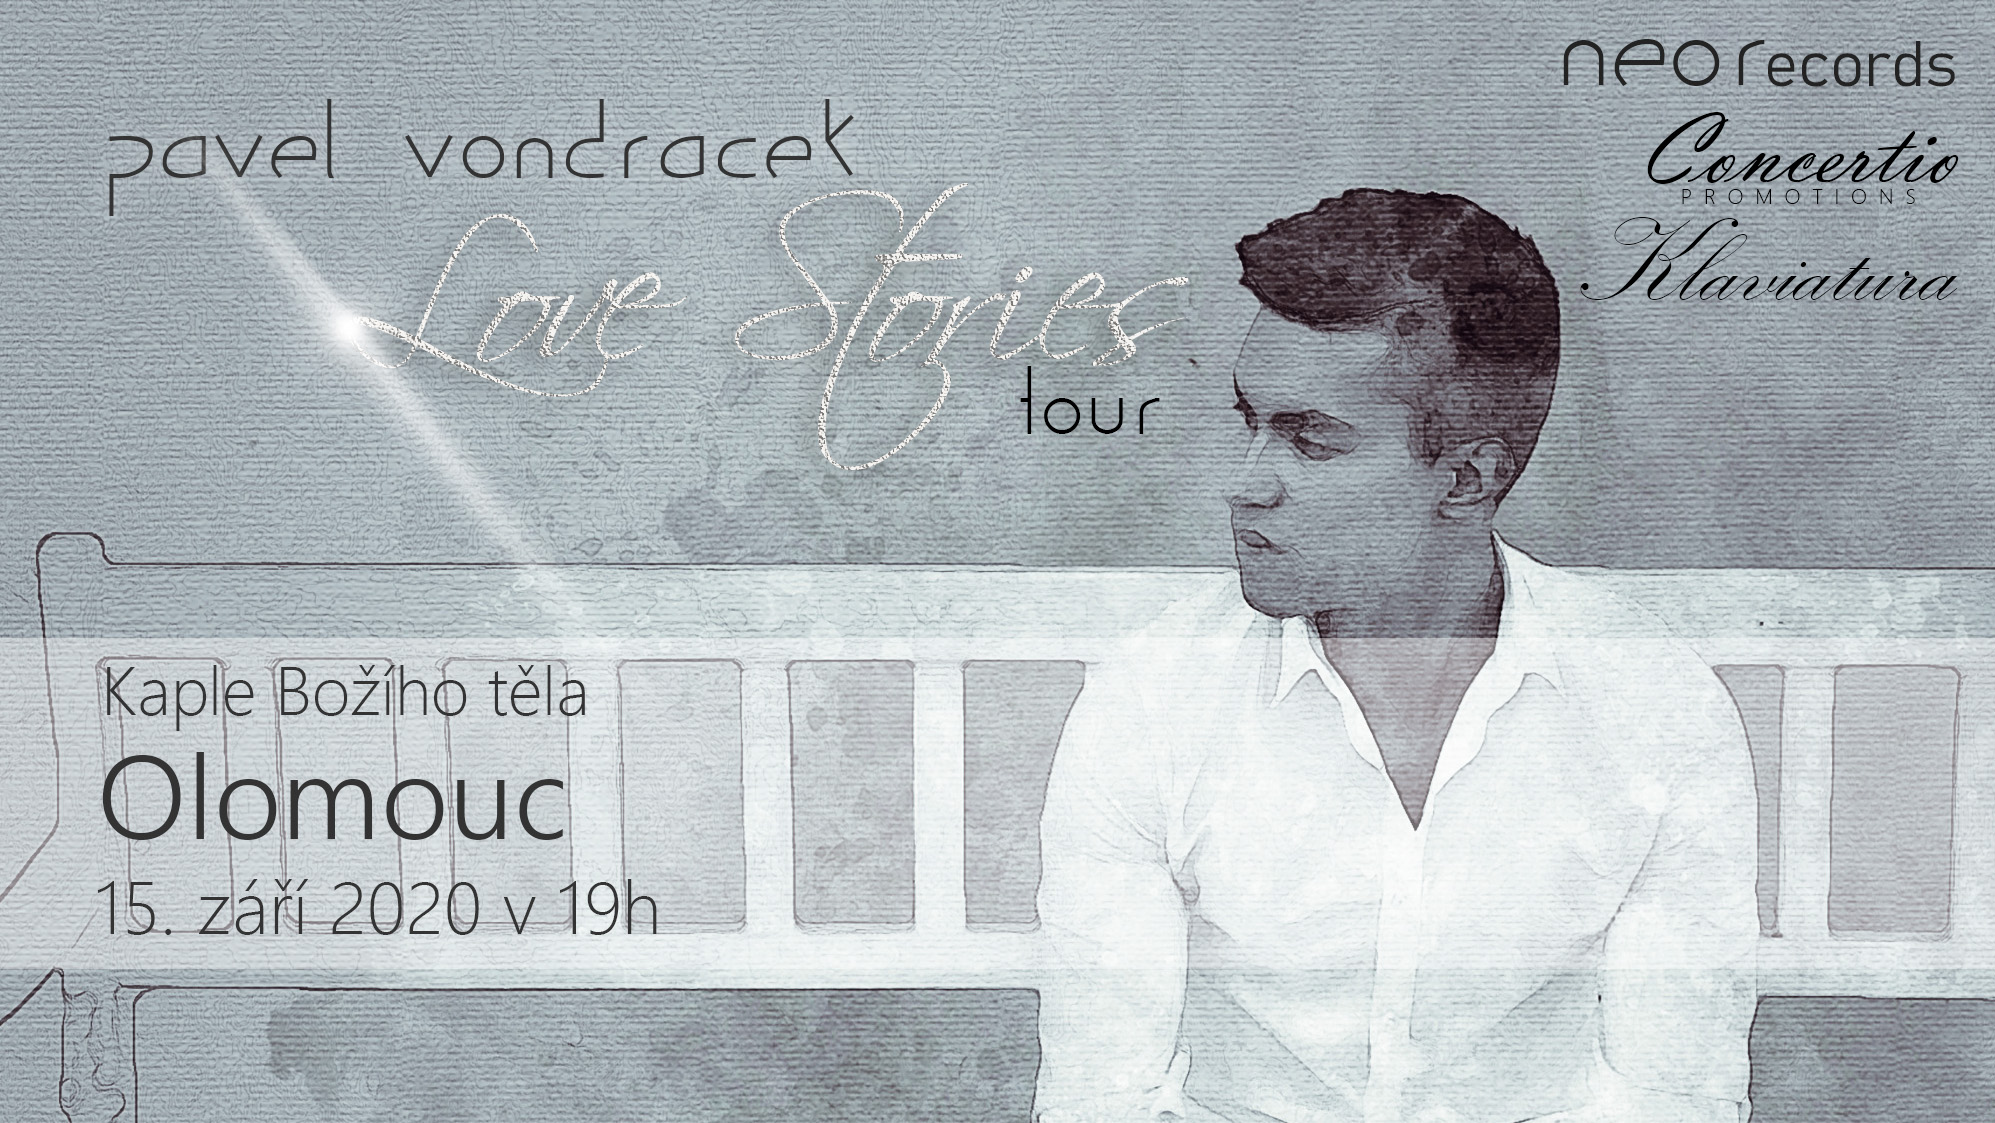 Pavel Vondráček - Love Stories Tour - koncert v Olomouci -Kaple Božího těla, Univerzitní 226, Olomouc